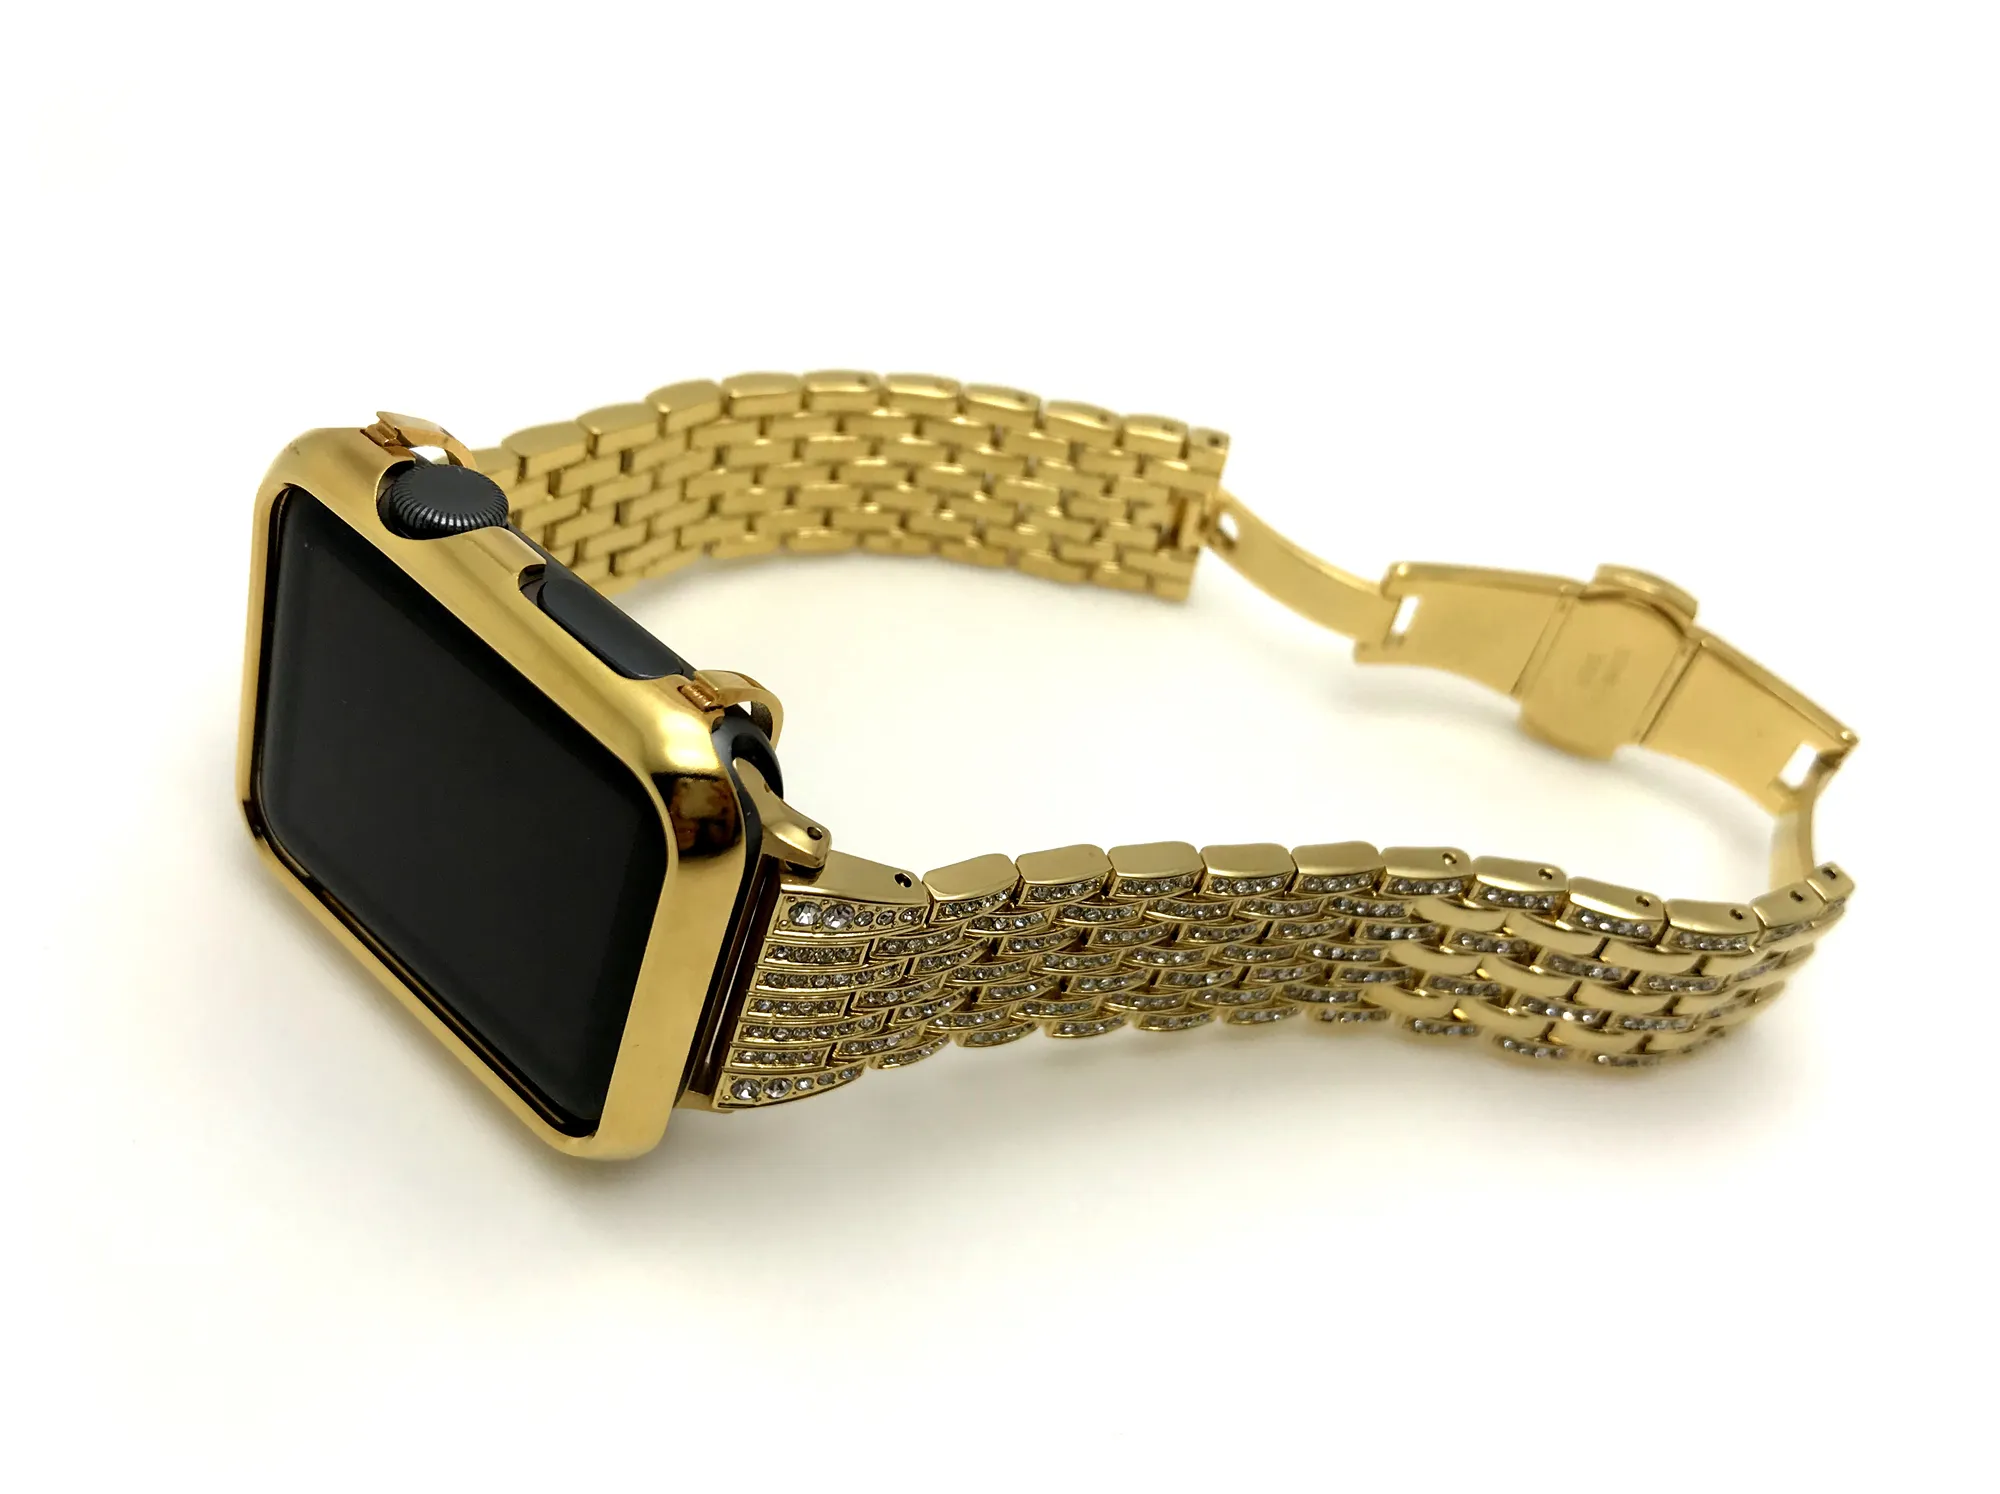 24k banhado a ouro apple assista tampa da caixa case + ouro diamantes de aço inoxidável watch band para apple watch s1 / s2 / s3 42mm (2em1 set)